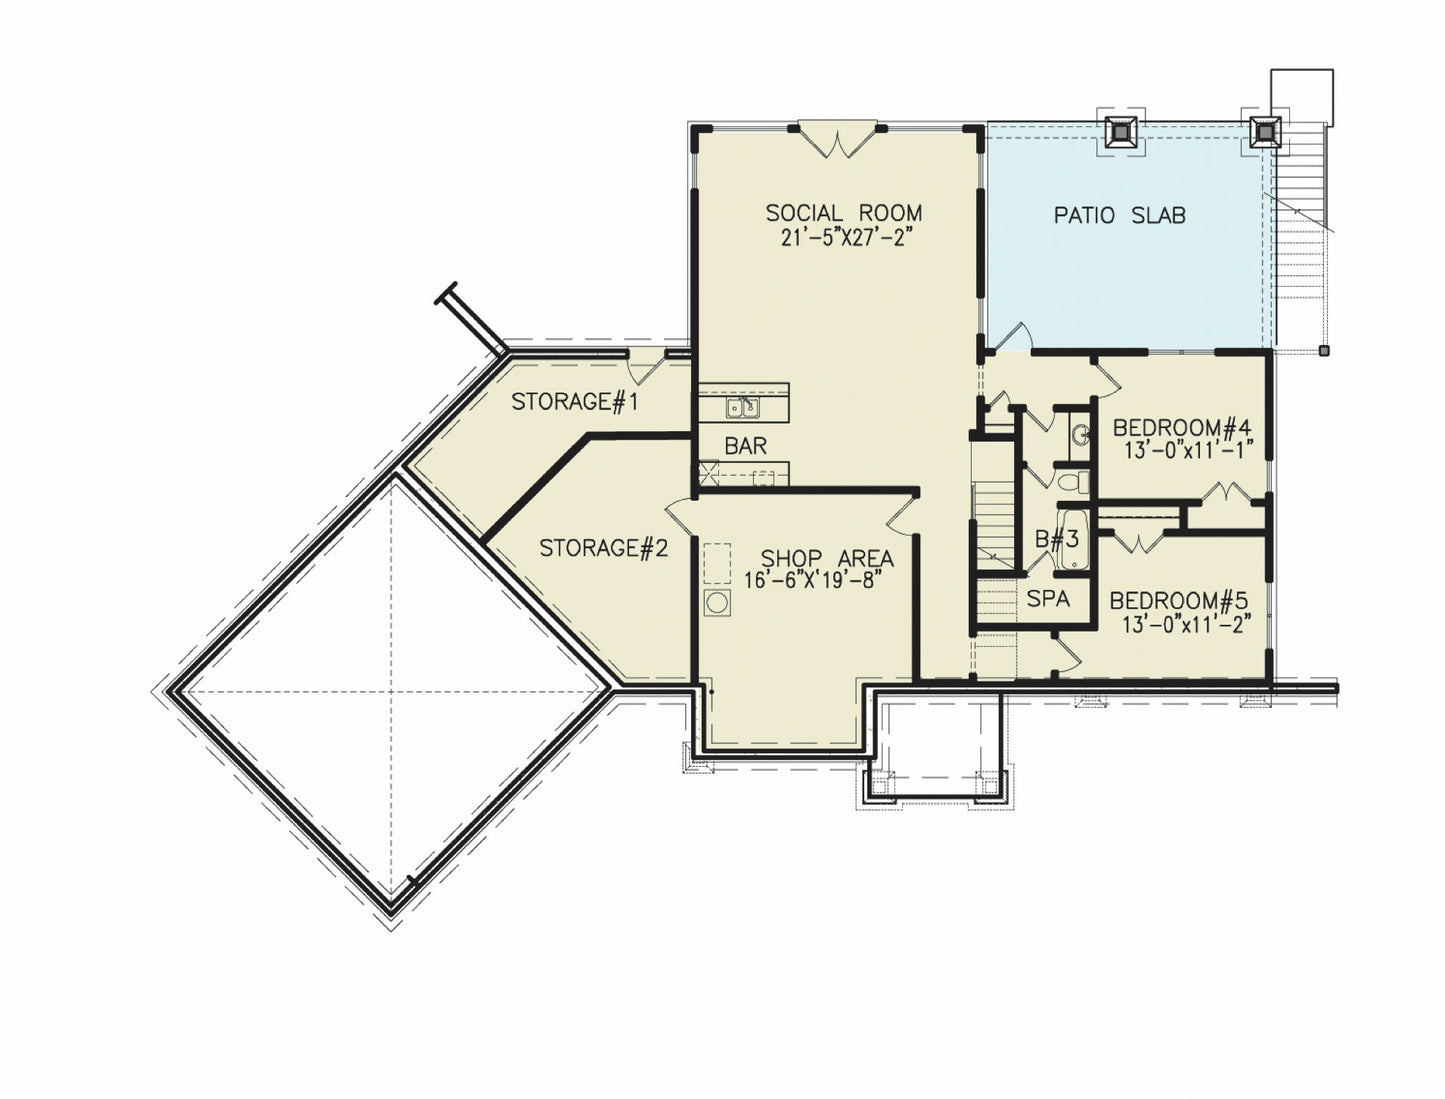 TERRACE FLOOR PLAN - 18051 Floor_Plan